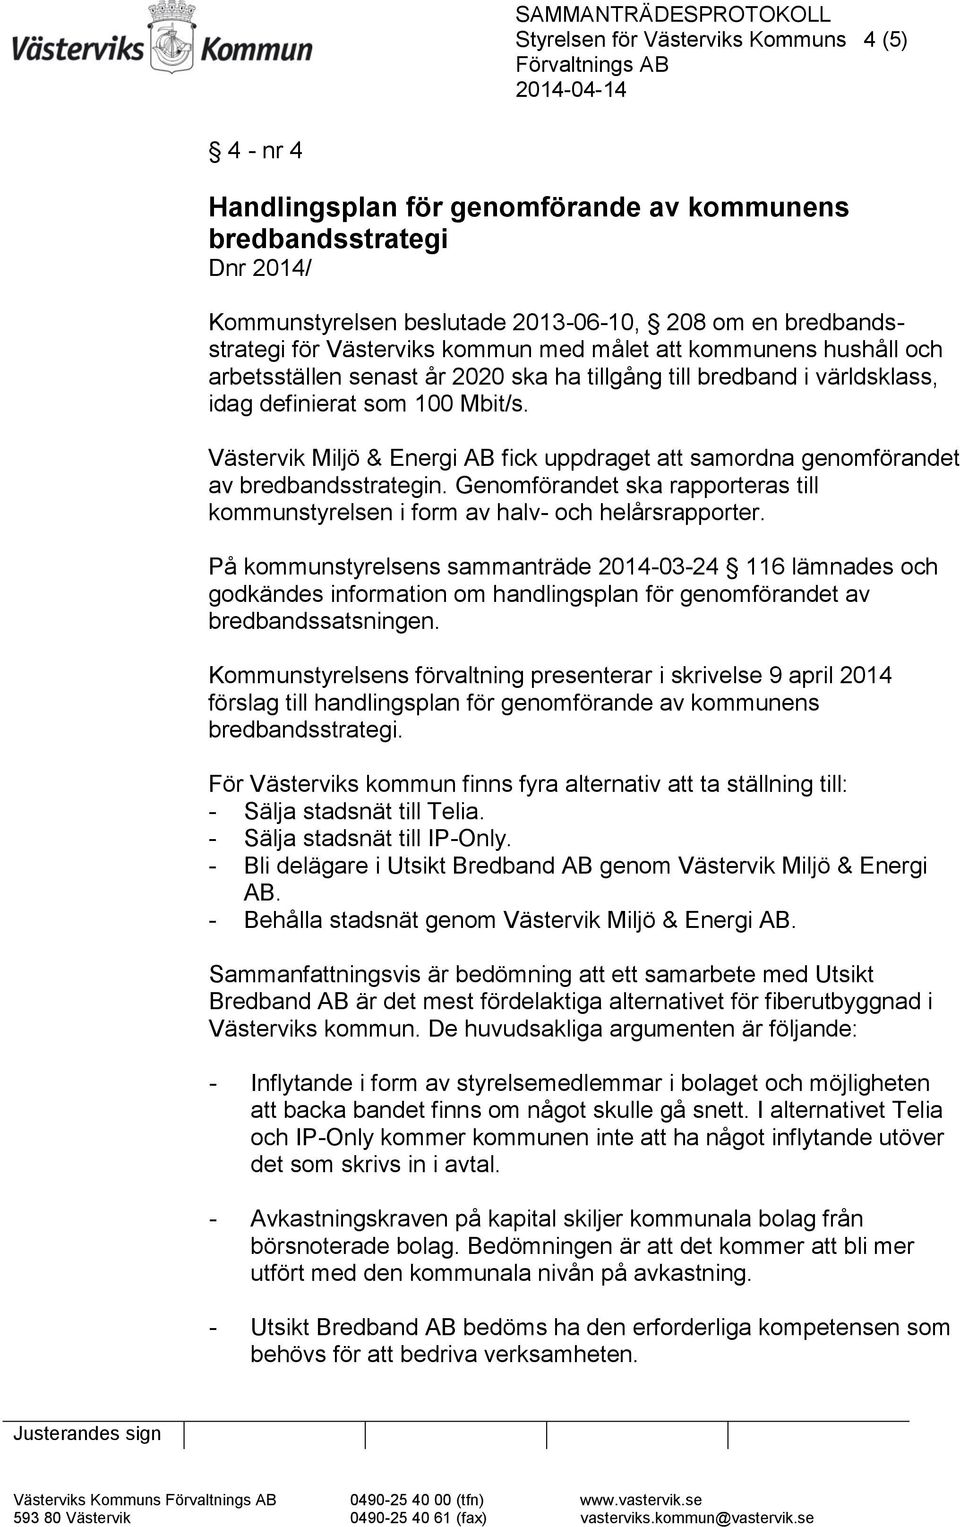 Västervik Miljö & Energi AB fick uppdraget att samordna genomförandet av bredbandsstrategin. Genomförandet ska rapporteras till kommunstyrelsen i form av halv- och helårsrapporter.